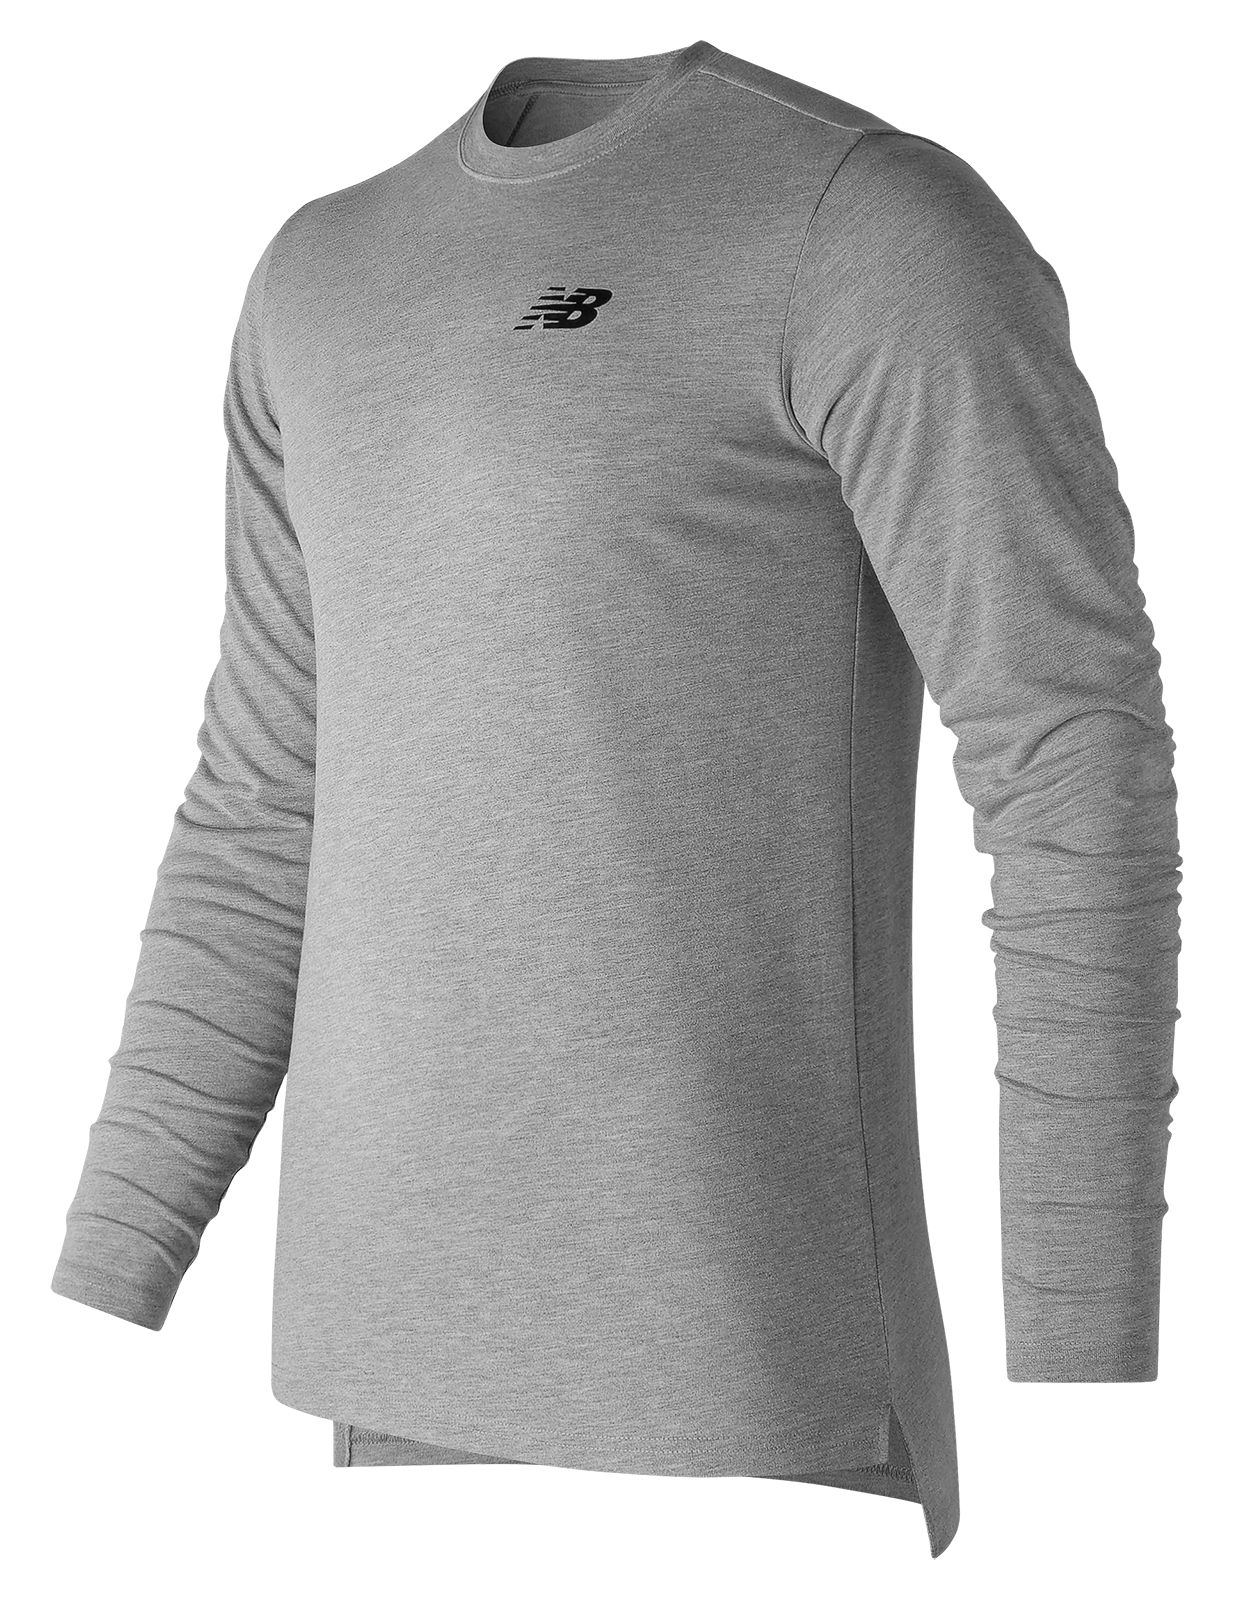 Long Sleeve T-Shirts - Men's Clothing | New Balance UK